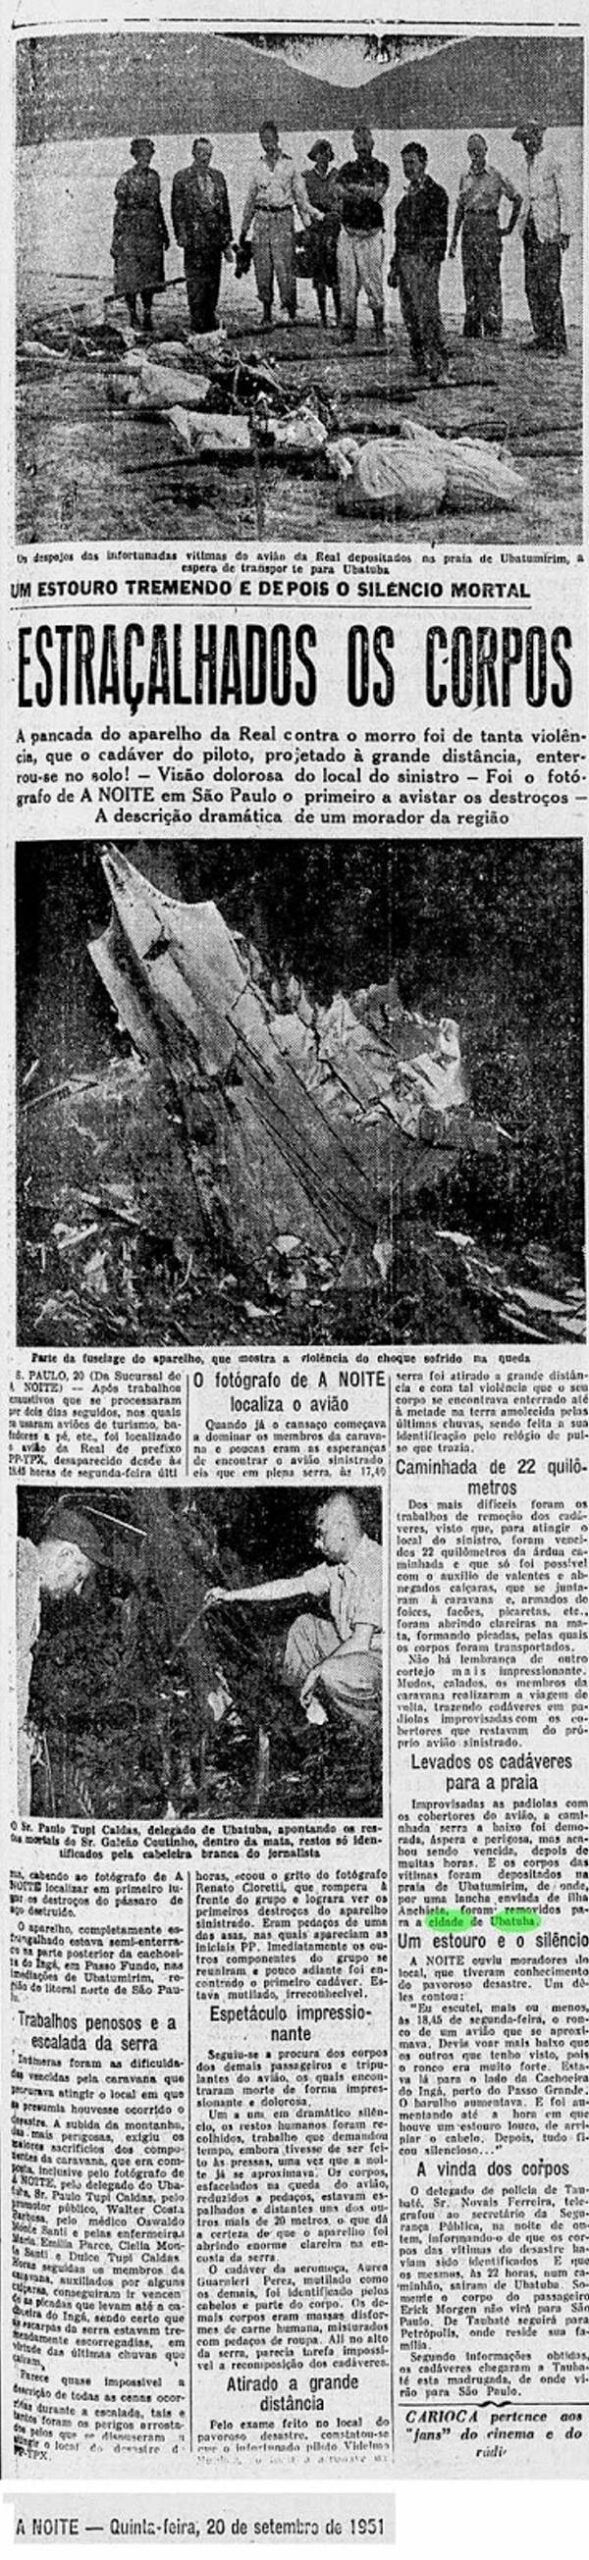 Acidente com DC-3 no Ubatumirim - Fonte: ubatubense.blogspot.com.br